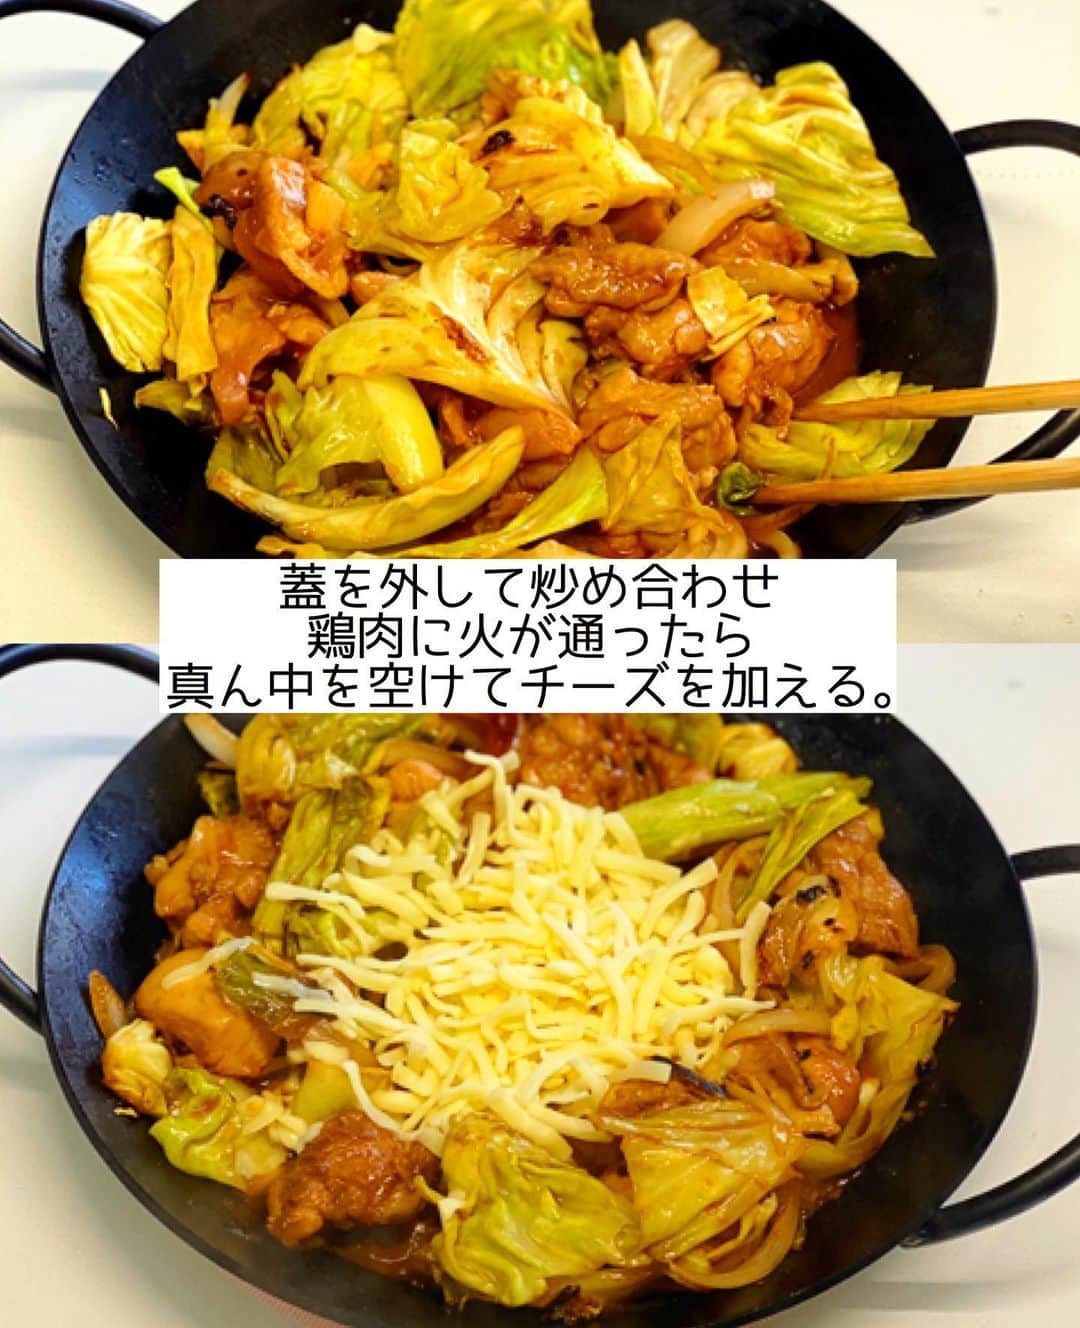 Mizuki【料理ブロガー・簡単レシピ】さんのインスタグラム写真 - (Mizuki【料理ブロガー・簡単レシピ】Instagram)「・﻿ 【#レシピ 】ーーーーーーーーー﻿ 辛くない！チーズタッカルビ風﻿ ーーーーーーーーーーーーーーー﻿ ﻿ ﻿ ﻿ おはようございます(*^^*)﻿ ﻿ 今日ご紹介させていただくのは﻿ \ 辛くない！チーズタッカルビ風 /﻿ ﻿ 本来チーズタッカルビは﻿ ピリ辛に味付けした韓国料理ですが﻿ 今回は辛さを抜いて﻿ お子さんも食べられるように仕上げました♩﻿ ﻿ 甘辛味噌味×チーズが相性抜群♡﻿ ごはんにもお酒にも合うので﻿ よかったらお試し下さいね(*´艸`)﻿ ﻿ ﻿ ﻿ ＿＿＿＿＿＿＿＿＿＿＿＿＿＿＿＿＿＿＿＿﻿ 【2〜3人分】﻿ 鶏もも肉...1枚(250g)﻿ ●味噌・醤油・ケチャップ...各大1.5﻿ ●砂糖・酒...各大1﻿ ●にんにくチューブ...2cm﻿ キャベツ...1/4個(250g)﻿ 玉ねぎ...1/4個﻿ ごま油...小2﻿ ピザ用チーズ...100g﻿ ﻿ 1.鶏肉は3cm大に切って●を揉み込む。キャベツはざく切りにする。玉ねぎは薄切りにする。﻿ 2.フライパンにごま油をのばし、キャベツ、玉ねぎ、鶏肉(漬けだれごと)の順に入れる。蓋をのせて中火にかけ、7分蒸し焼きにする。﻿ 3.蓋を外し、鶏肉に火が通るまで炒める。真ん中を空けてチーズを加え、チーズが溶けるまで加熱する。﻿ ￣￣￣￣￣￣￣￣￣￣￣￣￣￣￣￣￣￣￣￣﻿ ﻿ ﻿ ﻿ 《ポイント》﻿ ♦︎しっかり味です♩﻿ ♦︎フライパンに材料を入れ、蓋をしてから火にかけます♩﻿ ♦︎蒸し焼きにする時火が強いとキャベツが焦げるので注意して下さい☆﻿ ♦︎冷めるとチーズがかたまるので、出来立てをお召し上がり下さいね♩﻿ ﻿ ﻿ ﻿ ﻿ ﻿ ﻿ ﻿ ﻿ ➖➖➖🔔お知らせ🔔➖➖➖﻿ #2品献立 (マガジンハウス)が﻿ 一部楽天ブックスに入荷しています✨﻿ 長らく欠品が続き申し訳ございません(泣)﻿ ﻿ #ホットケーキミックスのお菓子 ﻿ (KADOKAWA)﻿ Amazonに入荷致しました🙇‍♀️﻿ ￣￣￣￣￣￣￣￣￣￣￣￣￣￣￣￣﻿ ﻿ ﻿ ﻿ ﻿ 📕重版しました！📕﻿ ありがとうございます😭﻿ 【ラクしておいしい！#1品晩ごはん 】﻿ ￣￣￣￣￣￣￣￣￣￣￣￣￣￣￣￣￣﻿ 私たちだってヘトヘトな日がある•••﻿ 毎日何品も作っていられない•••﻿ もうごはんに悩みたくない😢﻿ そんな時、1品ごはんはいかがでしょう？﻿ というご提案です✨﻿ ﻿ 【1品ごはん】は﻿ 副菜いらずで全てがシンプル！﻿ ￣￣￣￣￣￣￣￣￣￣￣￣￣￣￣￣￣￣﻿ 一品つくるだけでいいから﻿ 献立を考えなくてよし！﻿ ￣￣￣￣￣￣￣￣￣￣￣￣￣￣￣￣￣￣﻿ 悩まない、疲れない、﻿ 気力や時間がなくてもなんとかなる！﻿ ￣￣￣￣￣￣￣￣￣￣￣￣￣￣￣￣￣￣﻿ そんな頼りになる﻿ 便利なお助けごはんです☺️💕﻿ (ハイライトに🔗貼っています✨)﻿ ￣￣￣￣￣￣￣￣￣￣￣￣￣￣￣￣￣﻿ ﻿ ﻿ ﻿ ﻿ ﻿ ⭐️発売中⭐️﻿ ＿＿＿＿＿＿＿＿＿＿＿＿＿＿＿＿＿＿﻿ しんどくない献立、考えました♩﻿ \15分でいただきます/﻿ 📕Mizukiの2品献立 📕﻿ ﻿ 和食をもっとカジュアルに♩﻿ \毎日のごはんがラクになる/﻿ 📘#Mizukiの今どき和食 📘﻿ ﻿ ホケミレシピの決定版♩﻿ \はじめてでも失敗しない/﻿ 📙ホットケーキミックスのお菓子 📙﻿ ﻿ NHKまる得マガジンテキスト☆﻿ ホットケーキミックスで﻿ 📗絶品おやつ&意外なランチ📗﻿ ￣￣￣￣￣￣￣￣￣￣￣￣￣￣￣￣￣￣﻿ ﻿ ﻿ ﻿ ＿＿＿＿＿＿＿＿＿＿＿＿＿＿＿＿＿＿﻿ レシピを作って下さった際や﻿ レシピ本についてのご投稿には﻿ タグ付け( @mizuki_31cafe )して﻿ お知らせいただけると嬉しいです😊💕﻿ ￣￣￣￣￣￣￣￣￣￣￣￣￣￣￣￣￣￣﻿ ﻿ ﻿ ﻿ ﻿ #チーズタッカルビ#韓国料理#辛くない#鶏肉#キャベツ#Mizuki#簡単レシピ#時短レシピ#節約レシピ#料理#フーディーテーブル#マカロニメイト#おうちごはん#デリスタグラマー#料理好きな人と繋がりたい#おうちごはんlover#写真好きな人と繋がりたい#foodpic#cooking#recipe#lin_stagrammer#foodporn#yummy#f52grams#辛くないチーズタッカルビ風m」1月22日 7時02分 - mizuki_31cafe